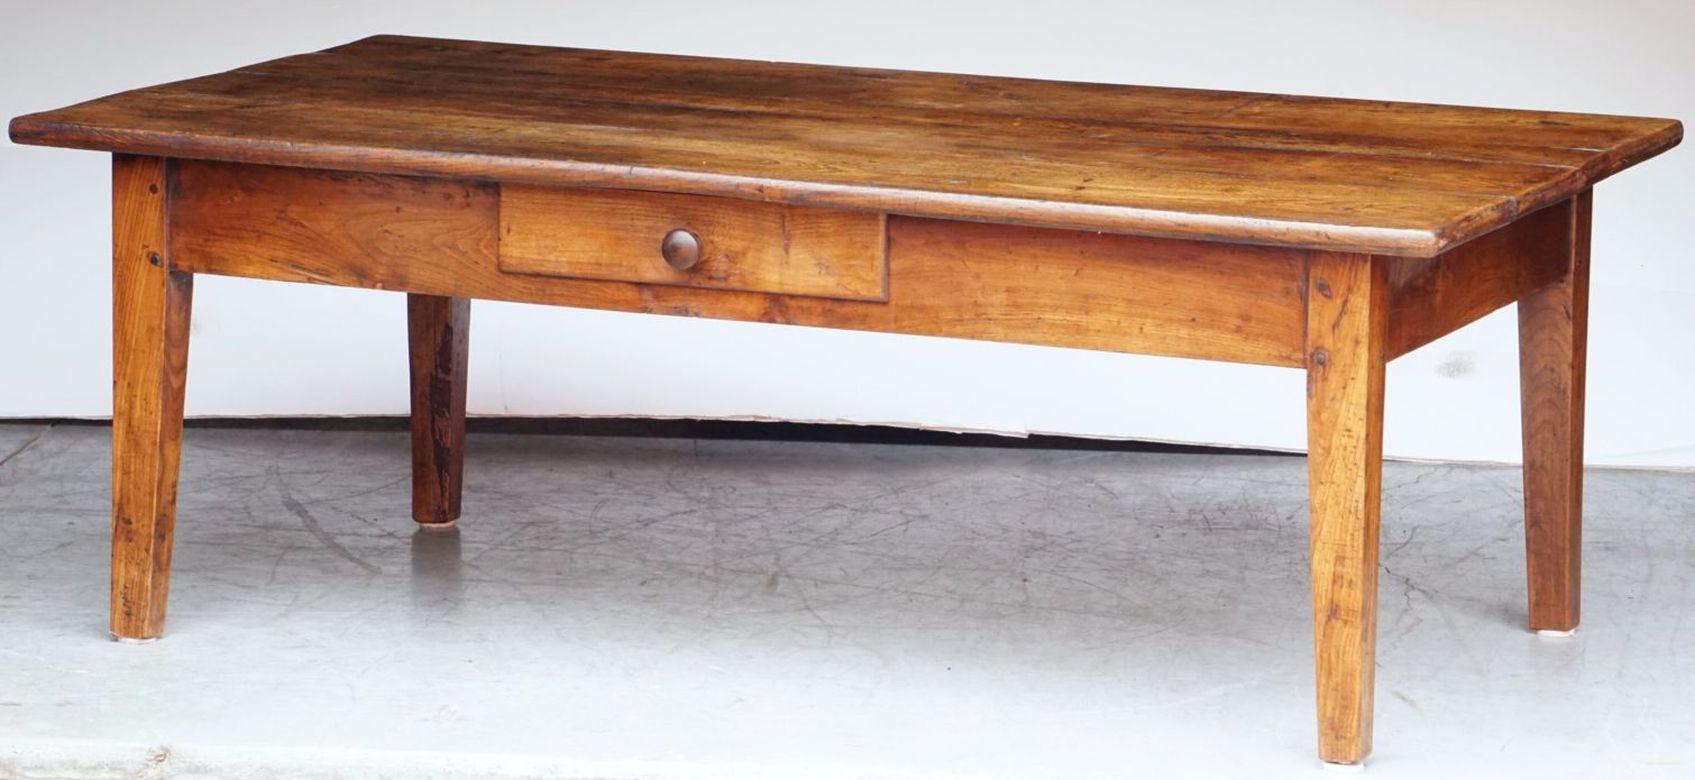 Ein großer französischer rechteckiger Couchtisch oder ein niedriger Tisch aus fein patiniertem Obstholz, mit einer hübschen Plankenplatte auf einem Rahmen aus vier verjüngten Beinen und einer gegenüberliegenden Schublade mit Knaufzug.

Das Ganze mit